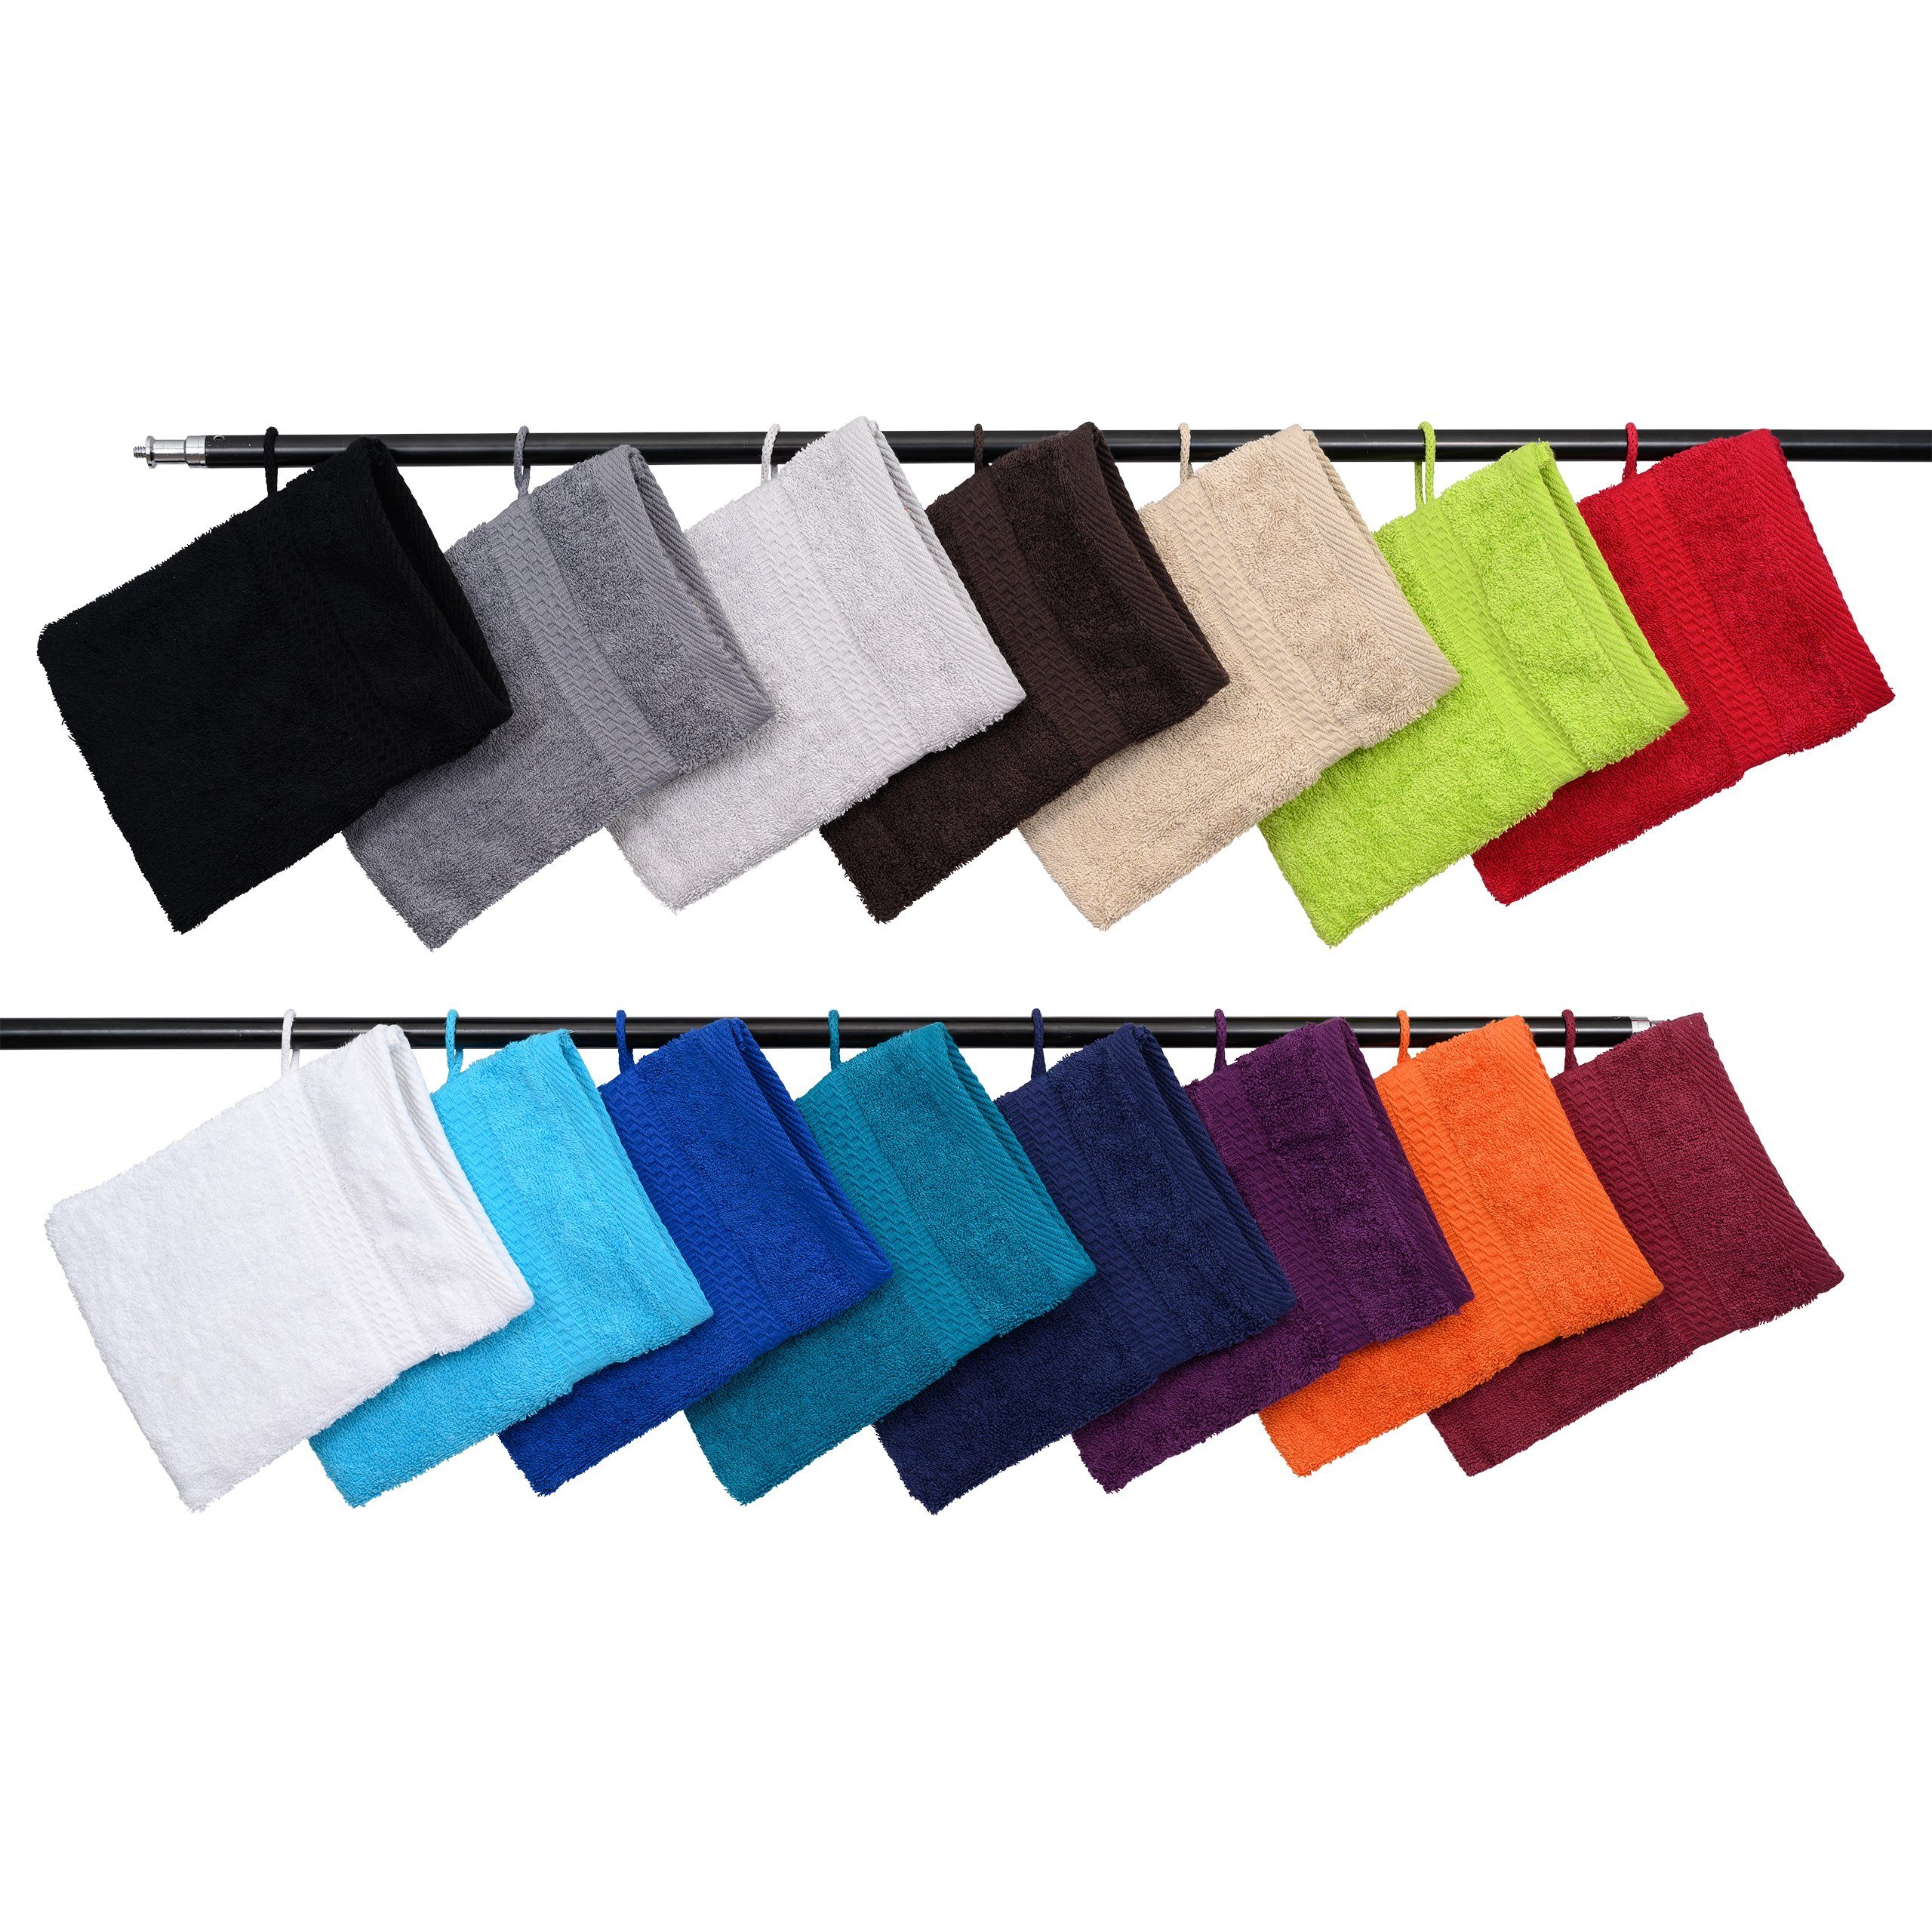 Hometex Premium Textiles Waschhandschuh Waschhandschuh in vielen verschiedenen Farben & im praktischen 10er Set Terra